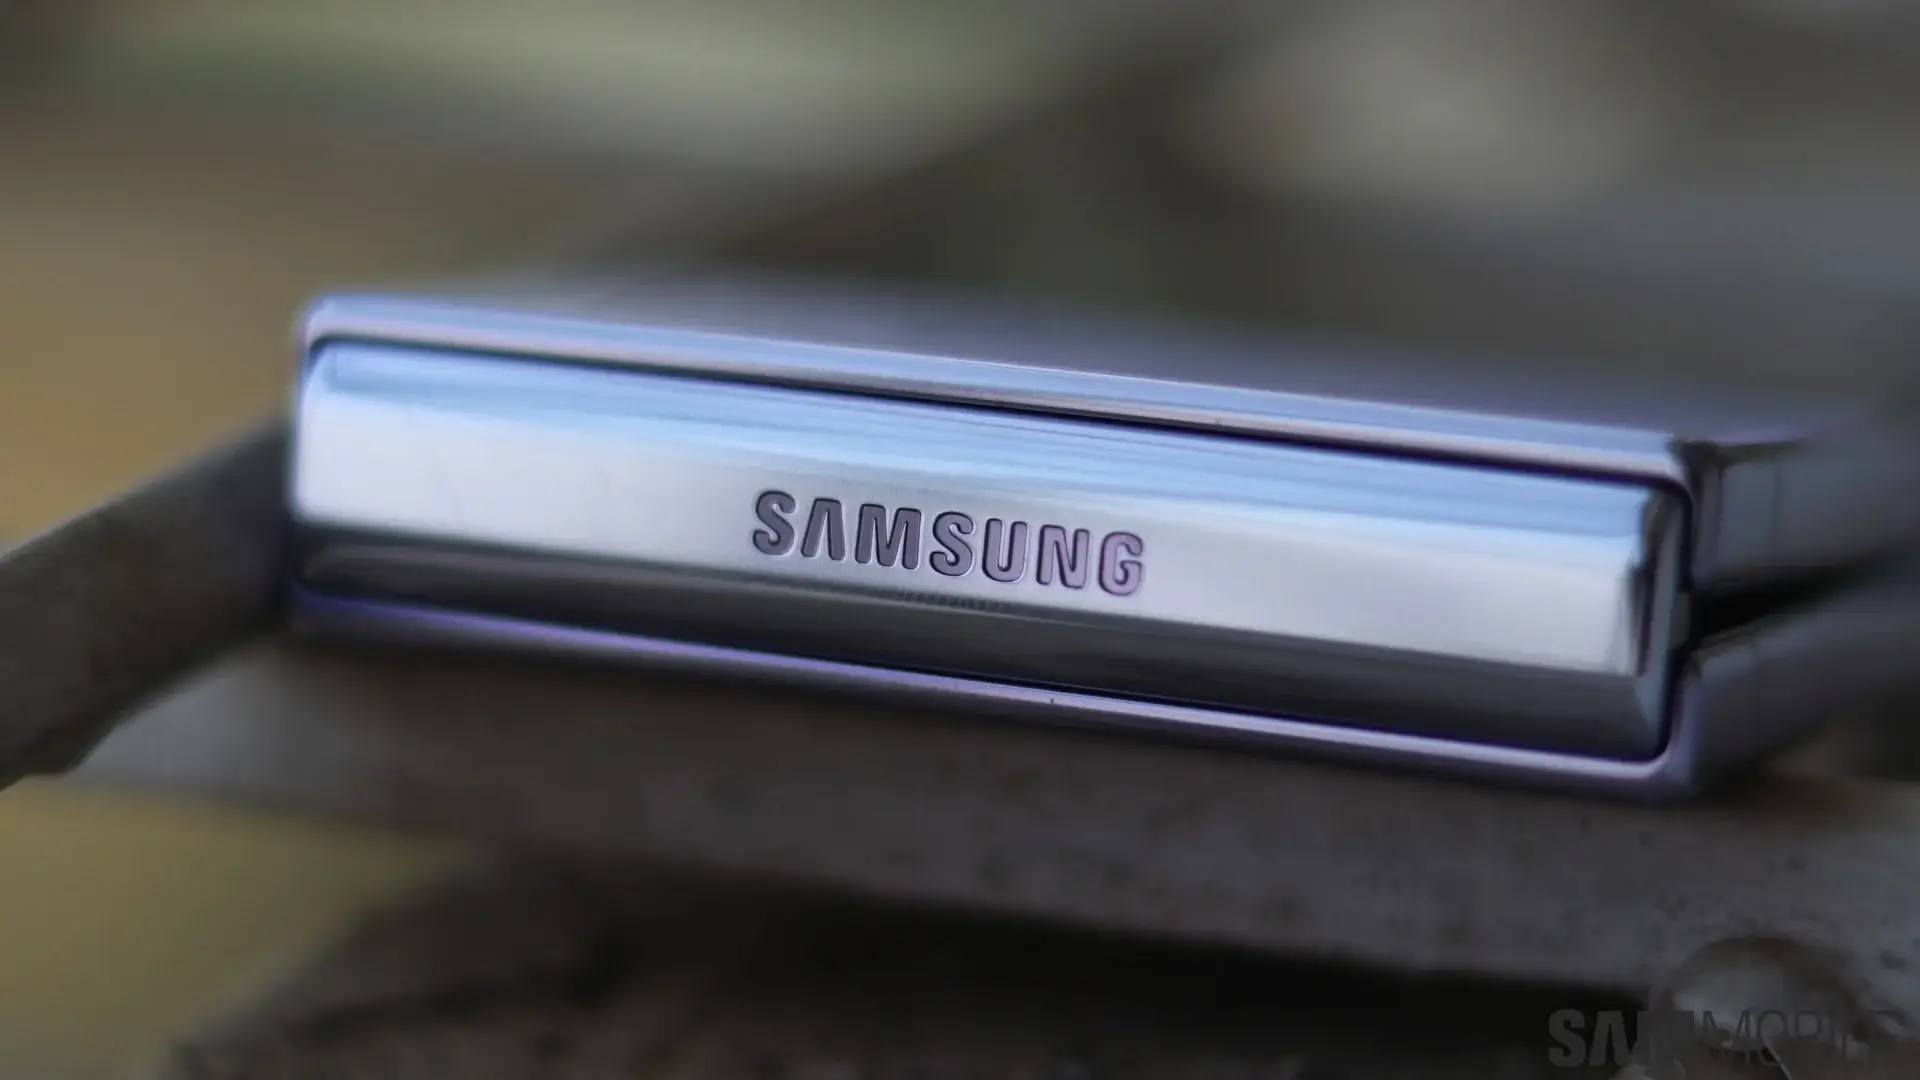 Tévedés ne essék, a Samsung előfizetést akar eladni Önnek